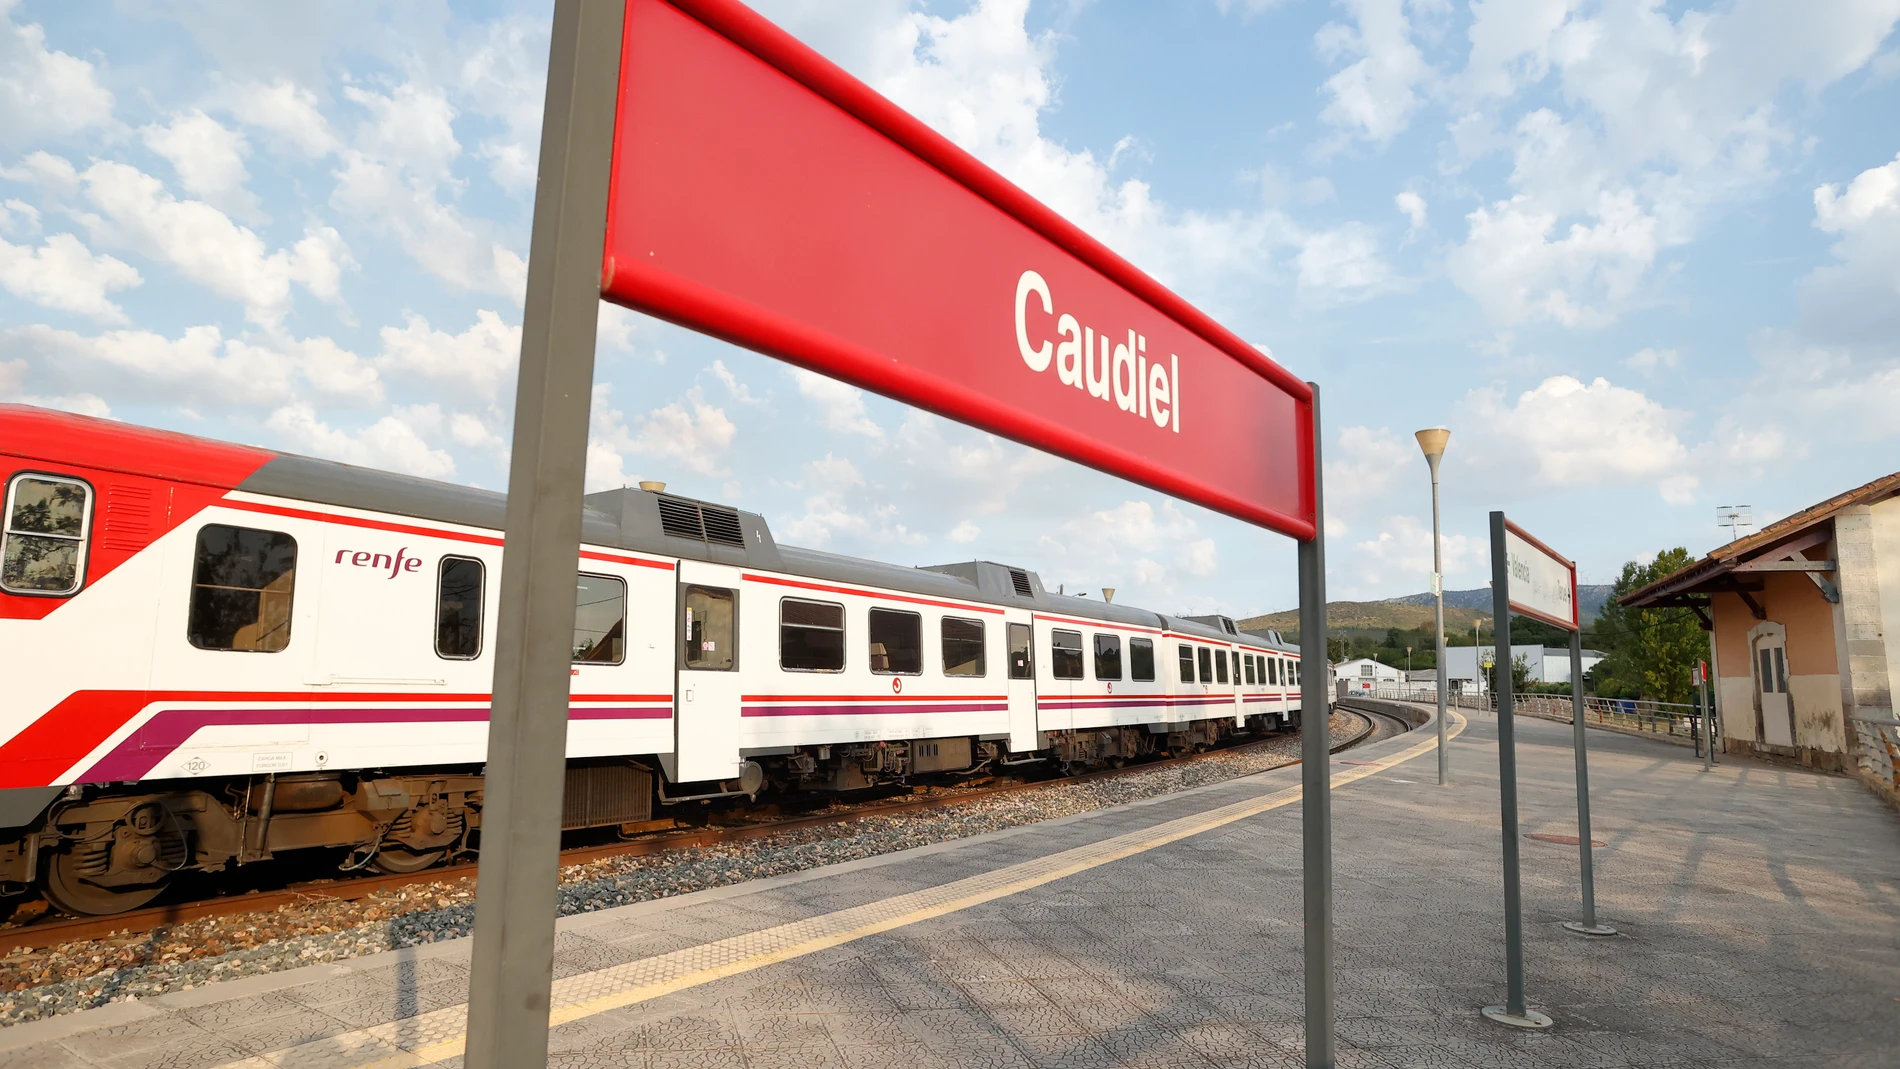 El accidente se produjo en la estación de tren de Caudiel (Castellón)